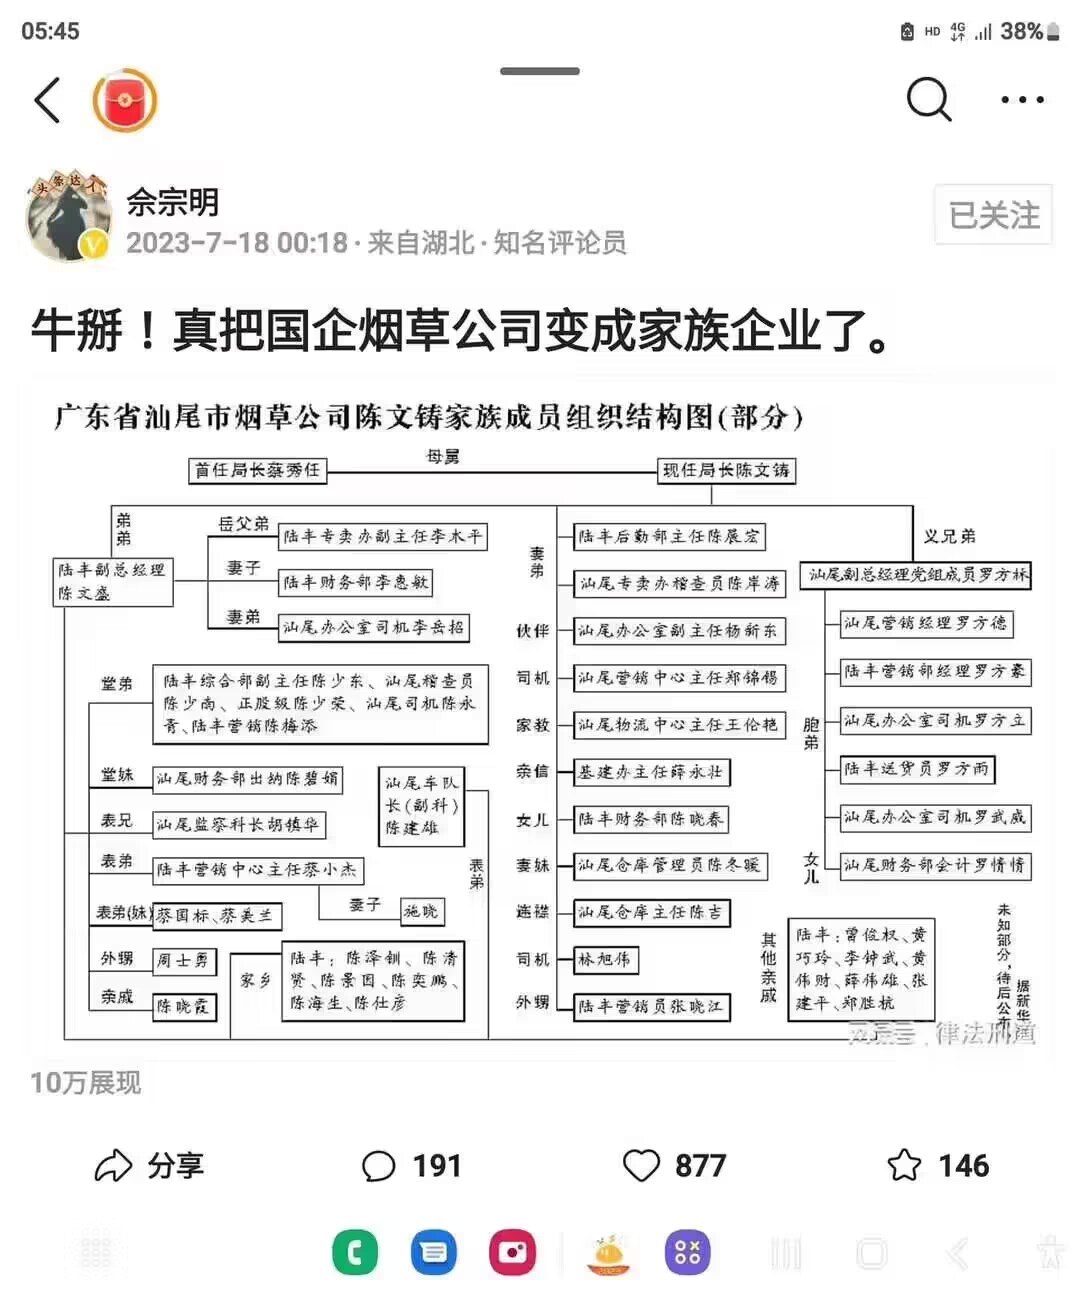 广东省汕尾市烟草公司陈文铸家族成员组织结构图